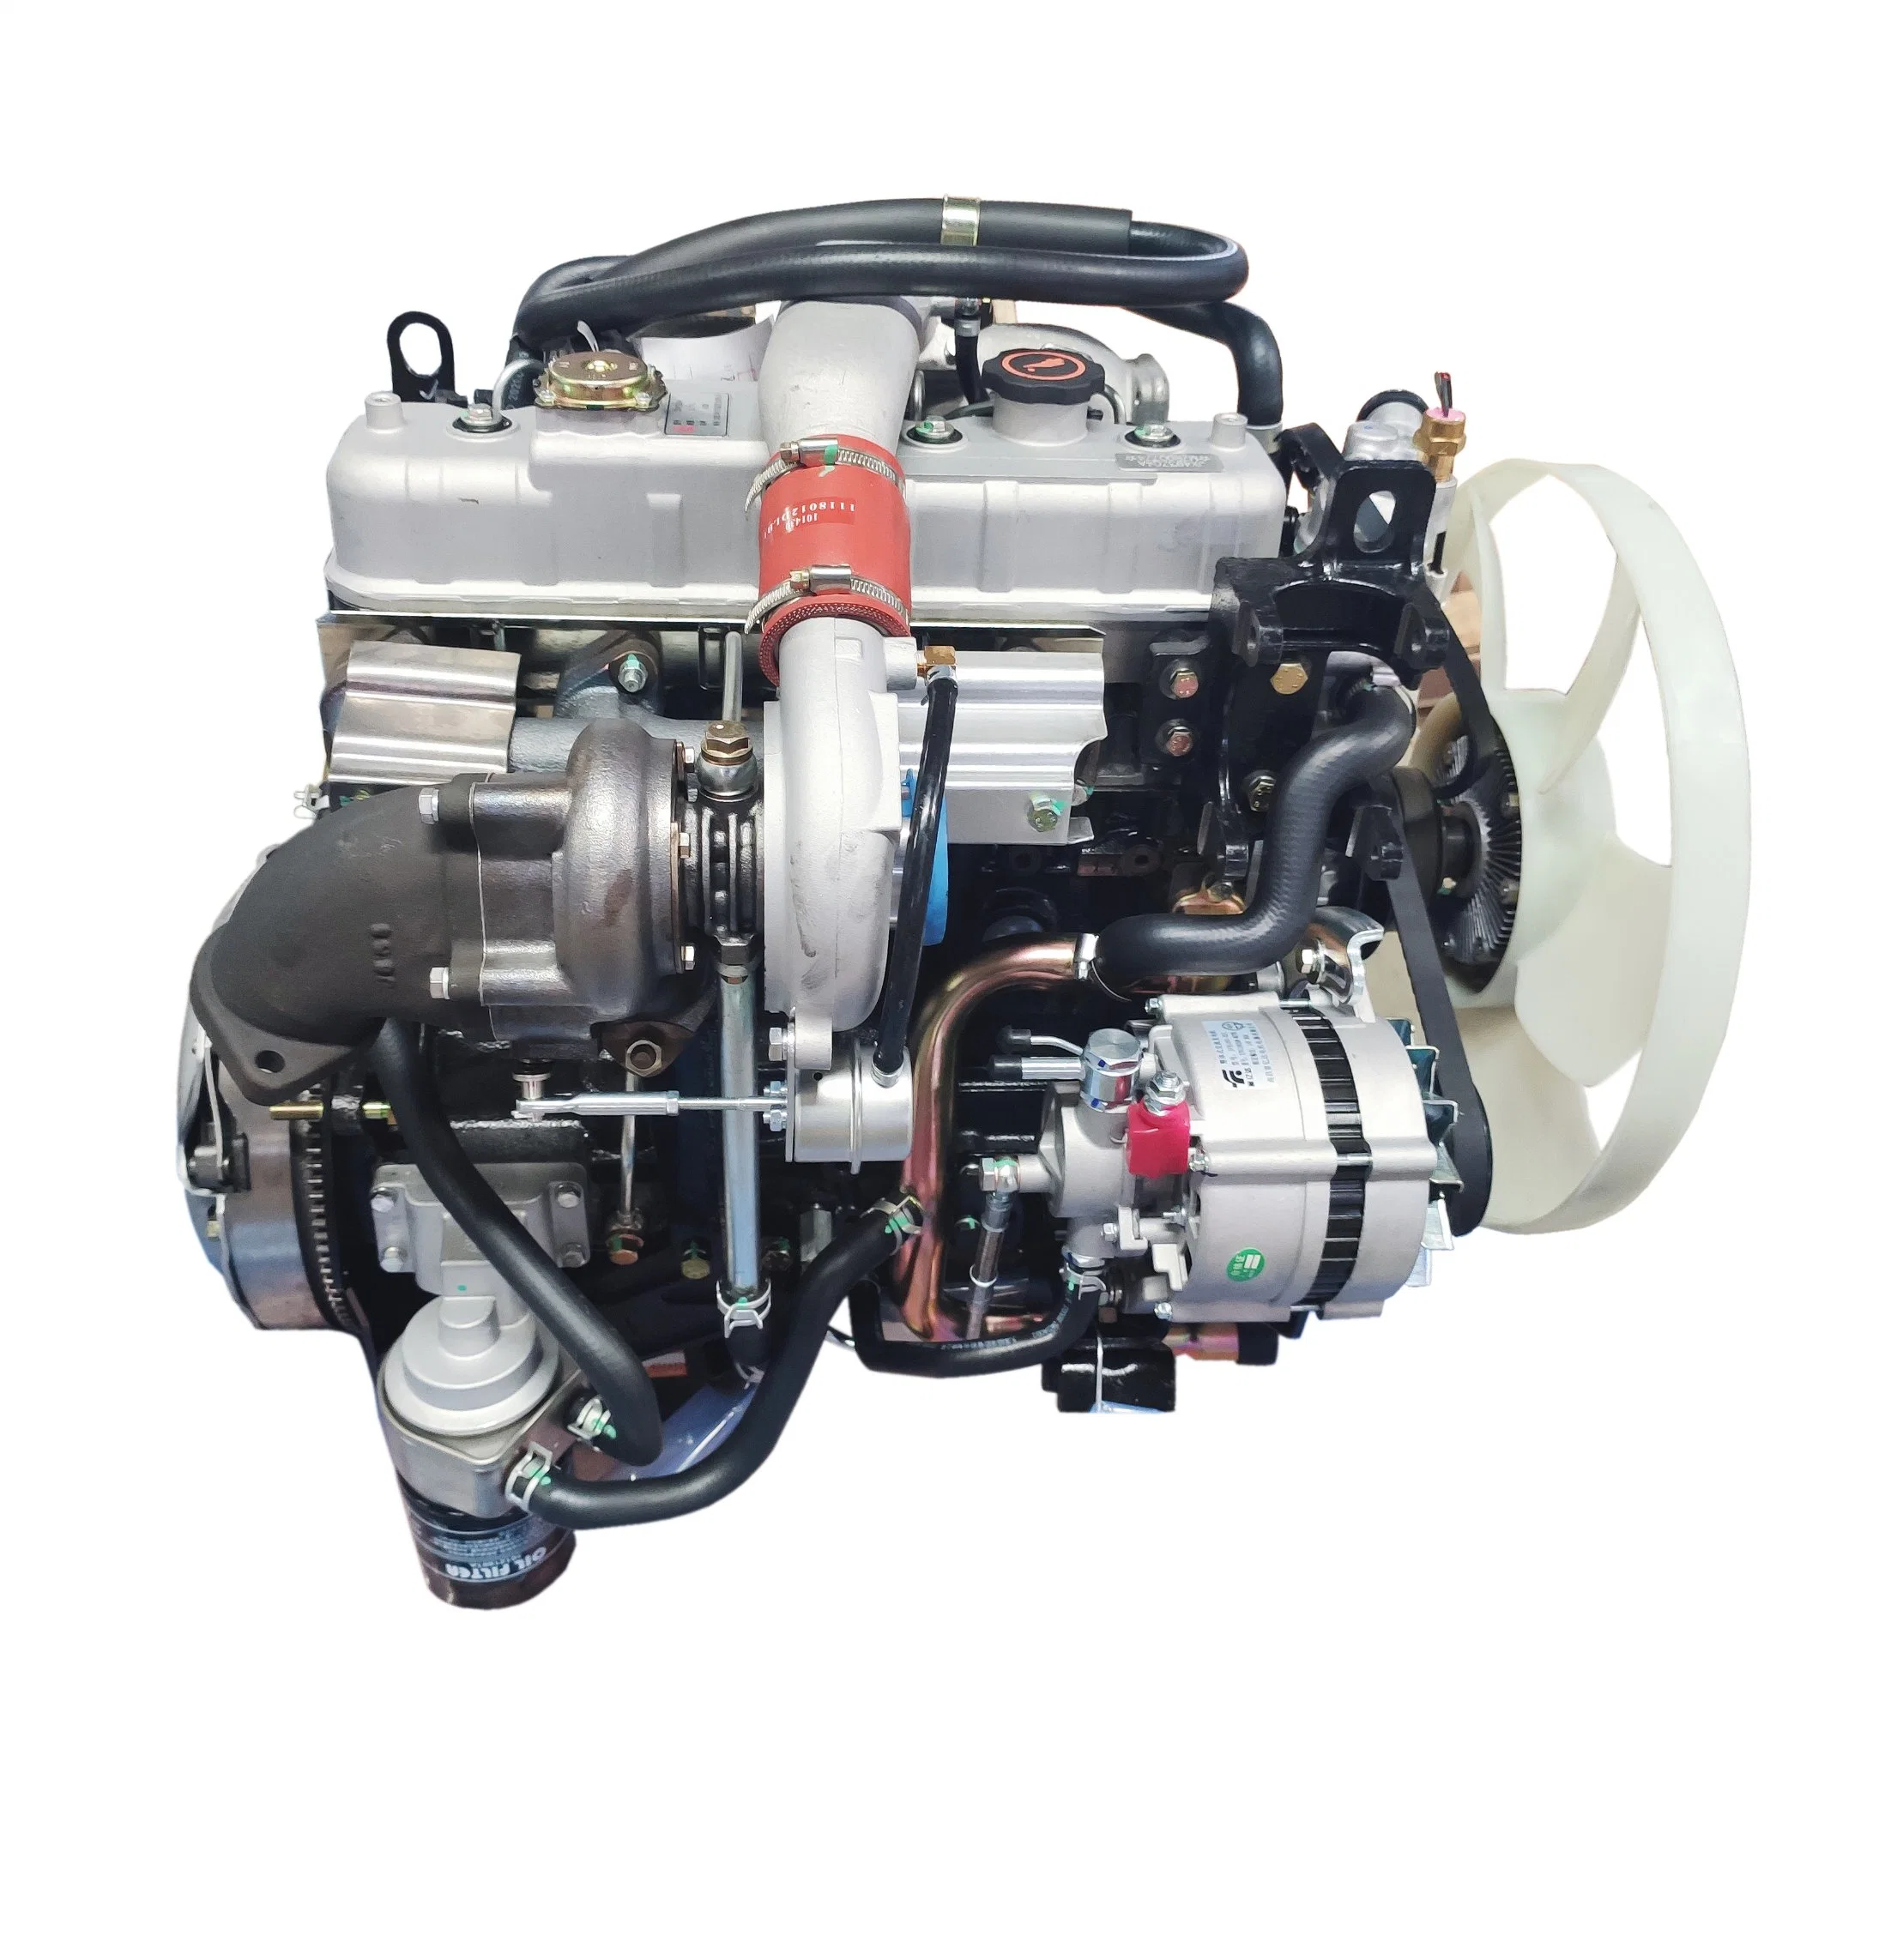 Motor diésel/Motor de camión/Motor de refrigeración por agua de 4 cilindros 68kw 4jb1/4jb1t para camiones SUV. Motor diésel marino para barcos.